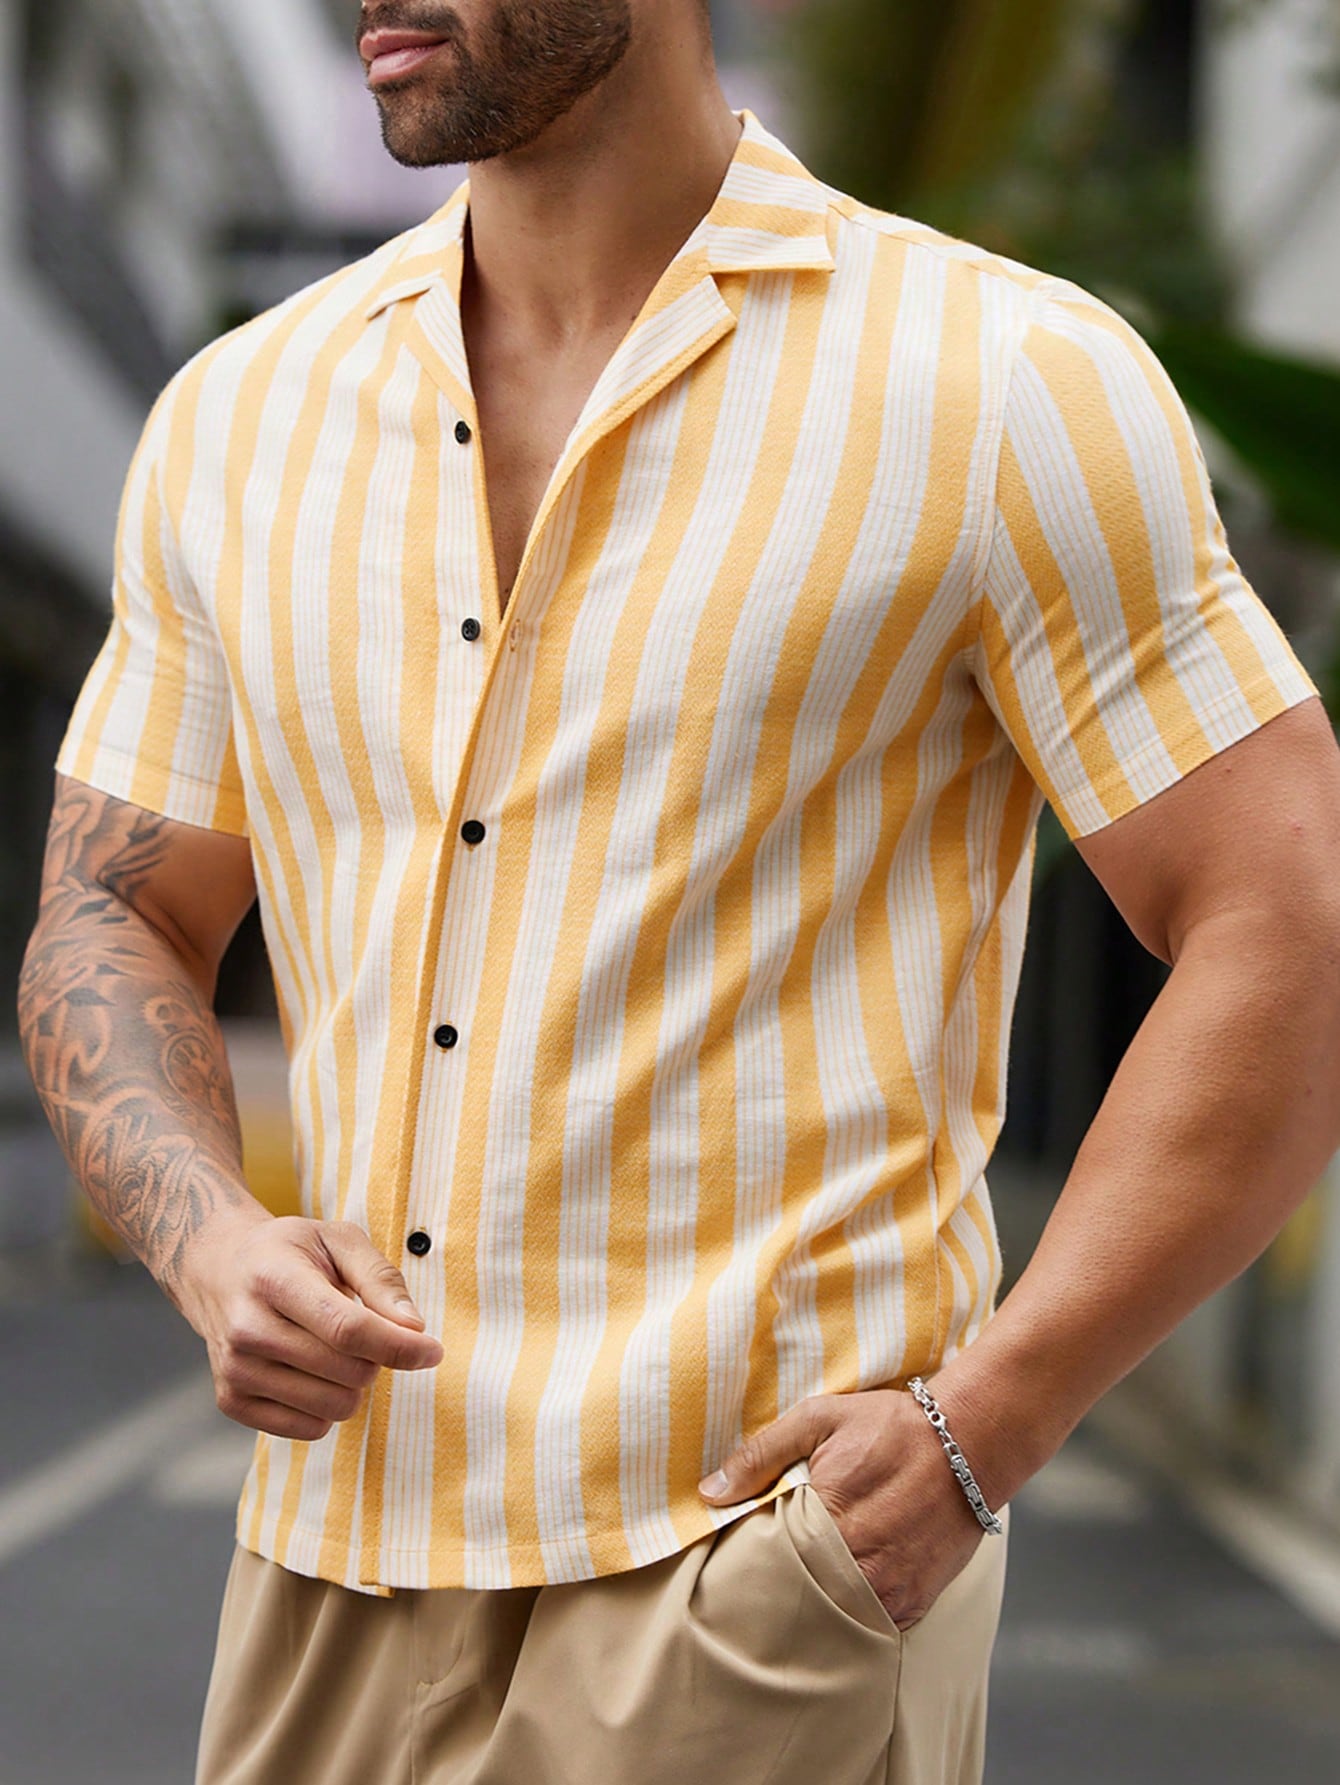 Мужская тканая рубашка в полоску с коротким рукавом Manfinity Homme, желтый рубашка мужская из ткани оксфорд с коротким рукавом в полоску 100% хлопок